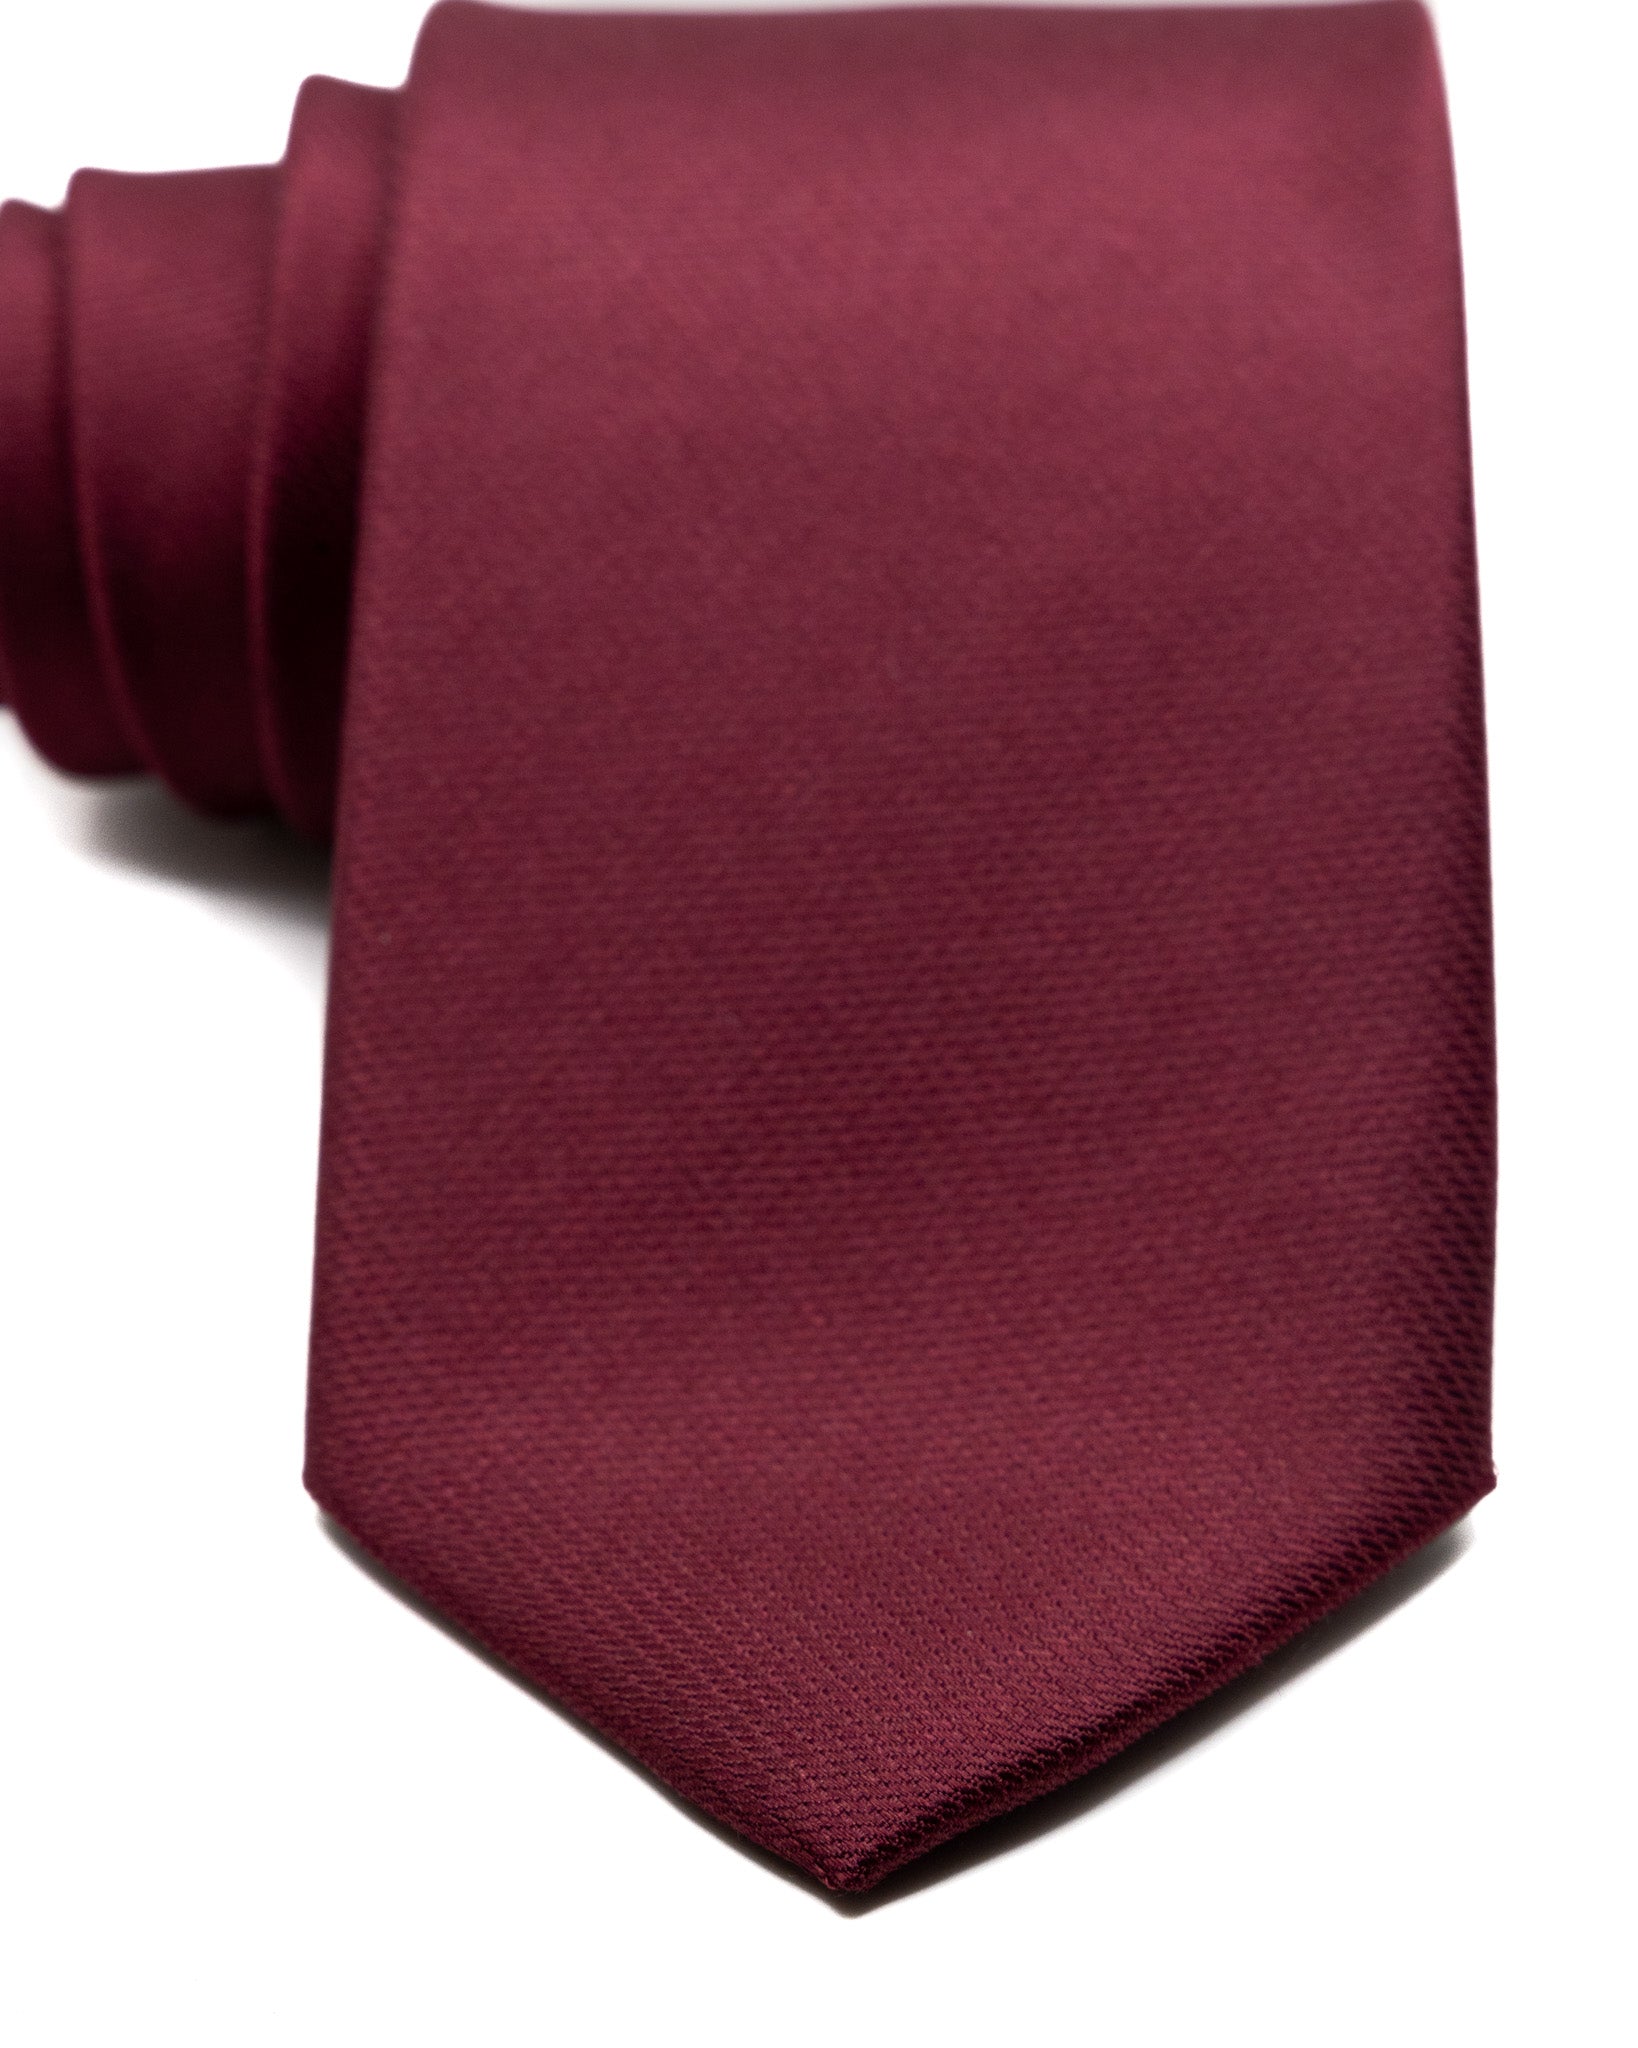 Tie - in burgundy woven silk